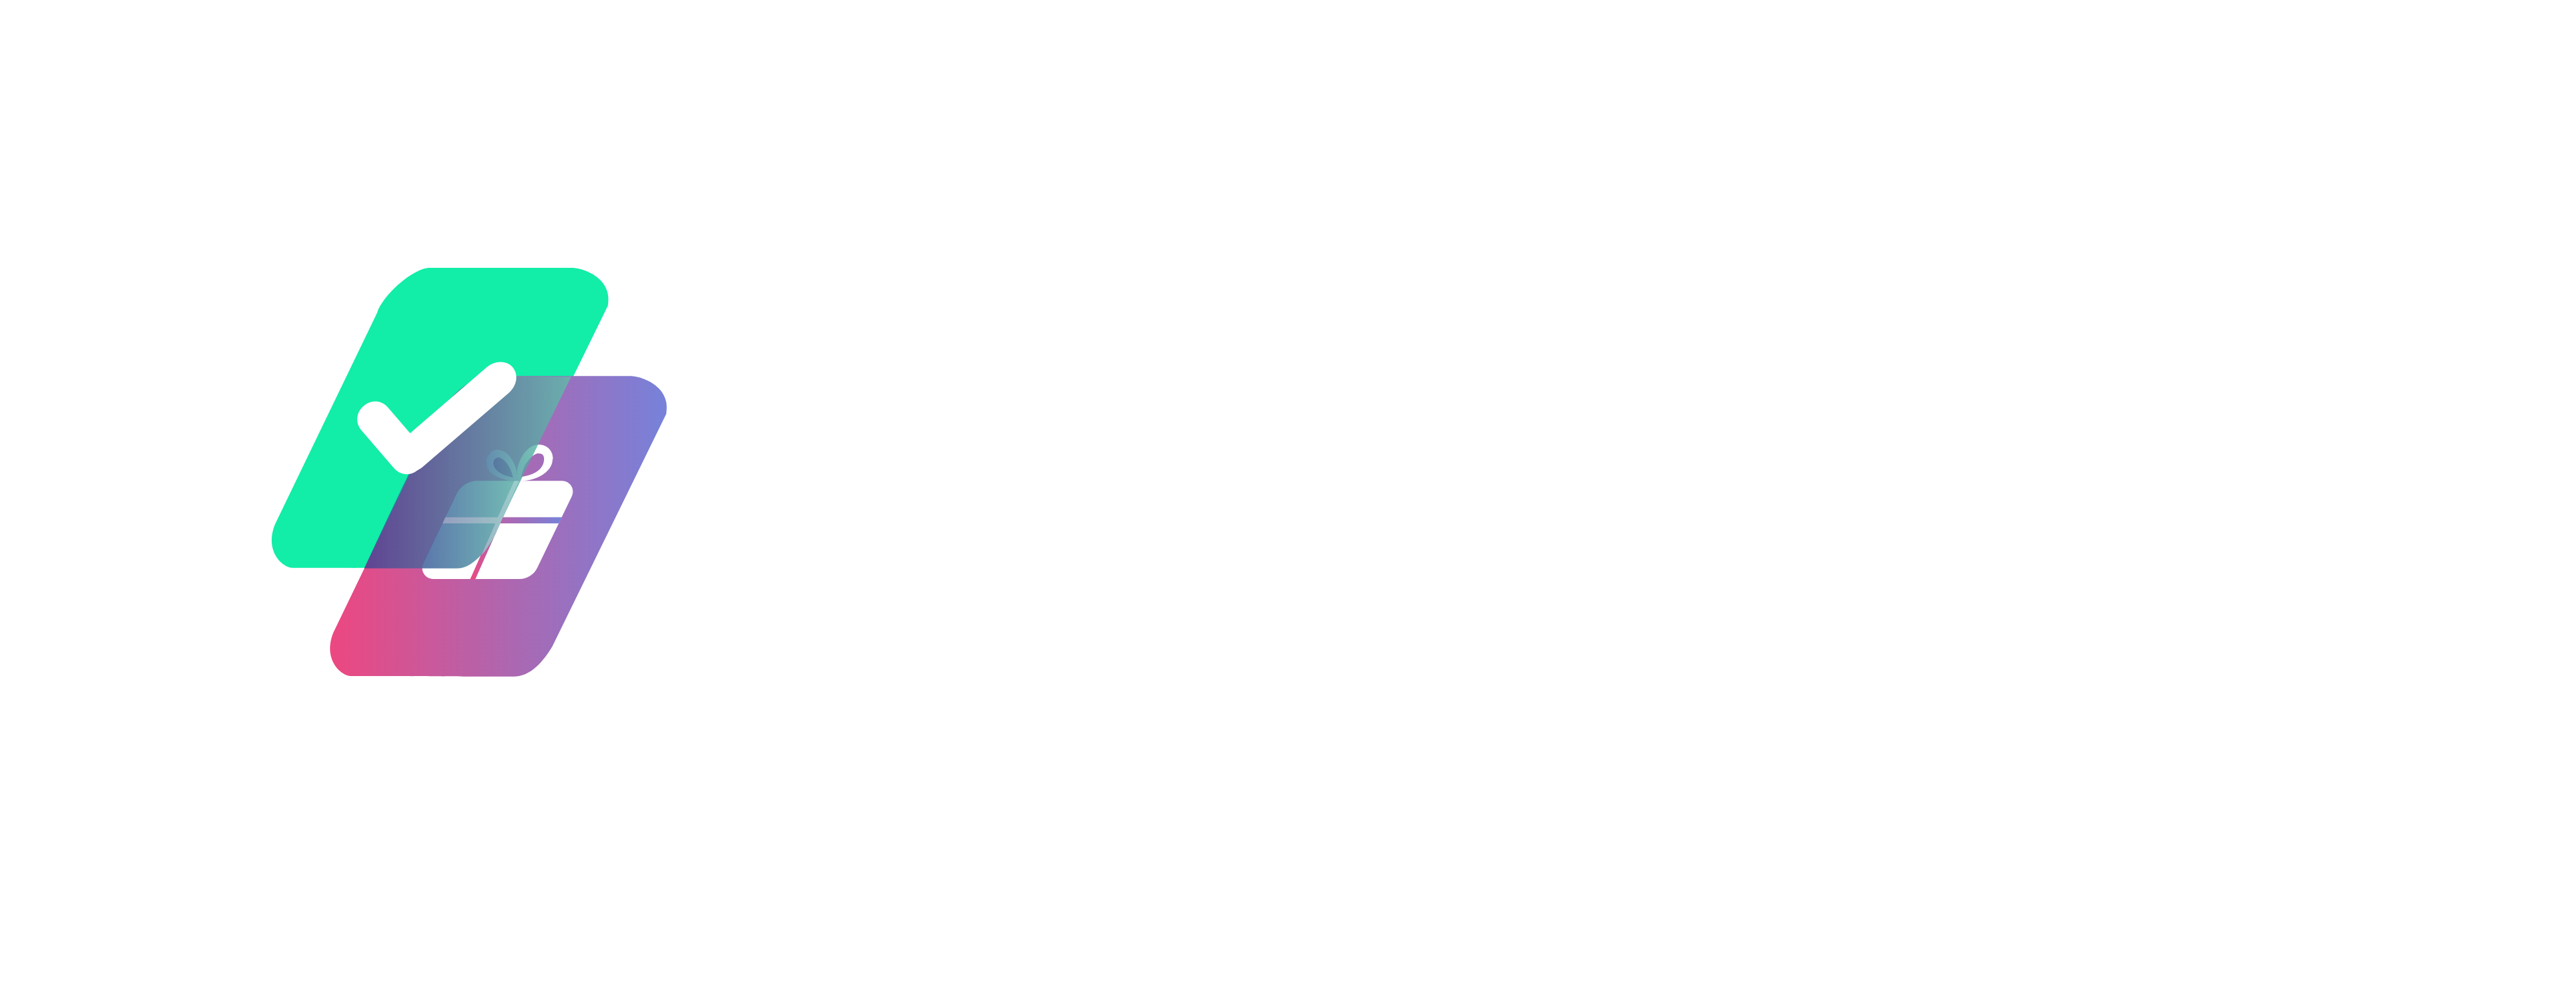 tooodooo logo png 2-2